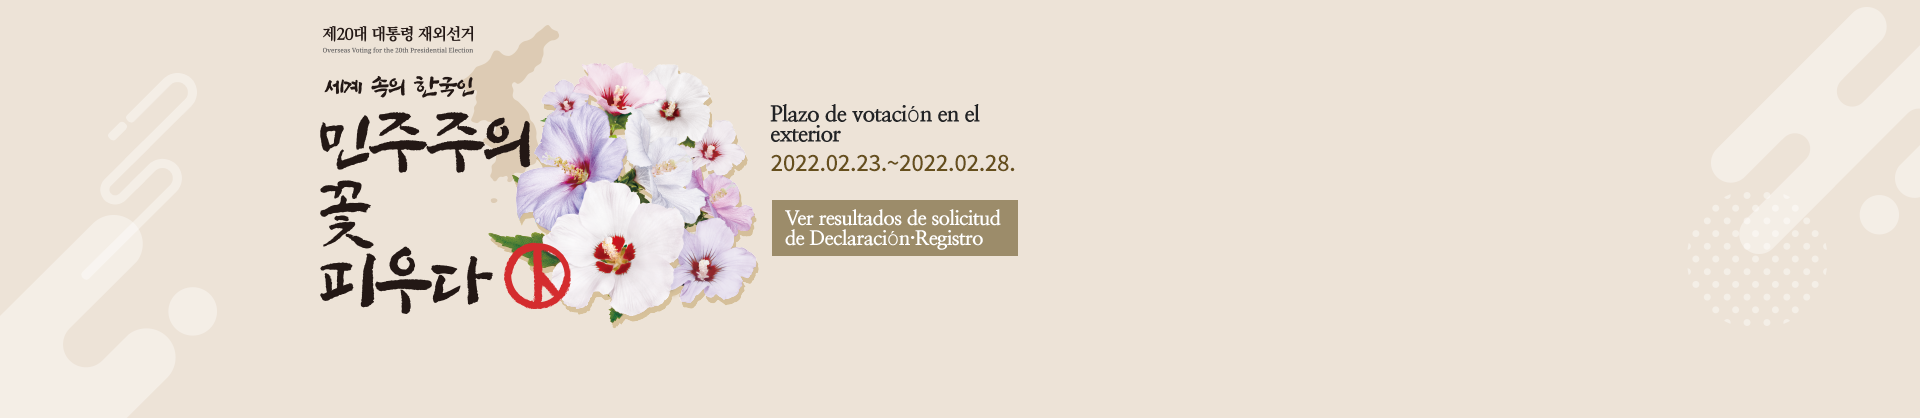 Ver resultados de solicitud de Declaración·Registro
Plazo de votación en el exterior
2022.02.23. ~ 2022.02.28.